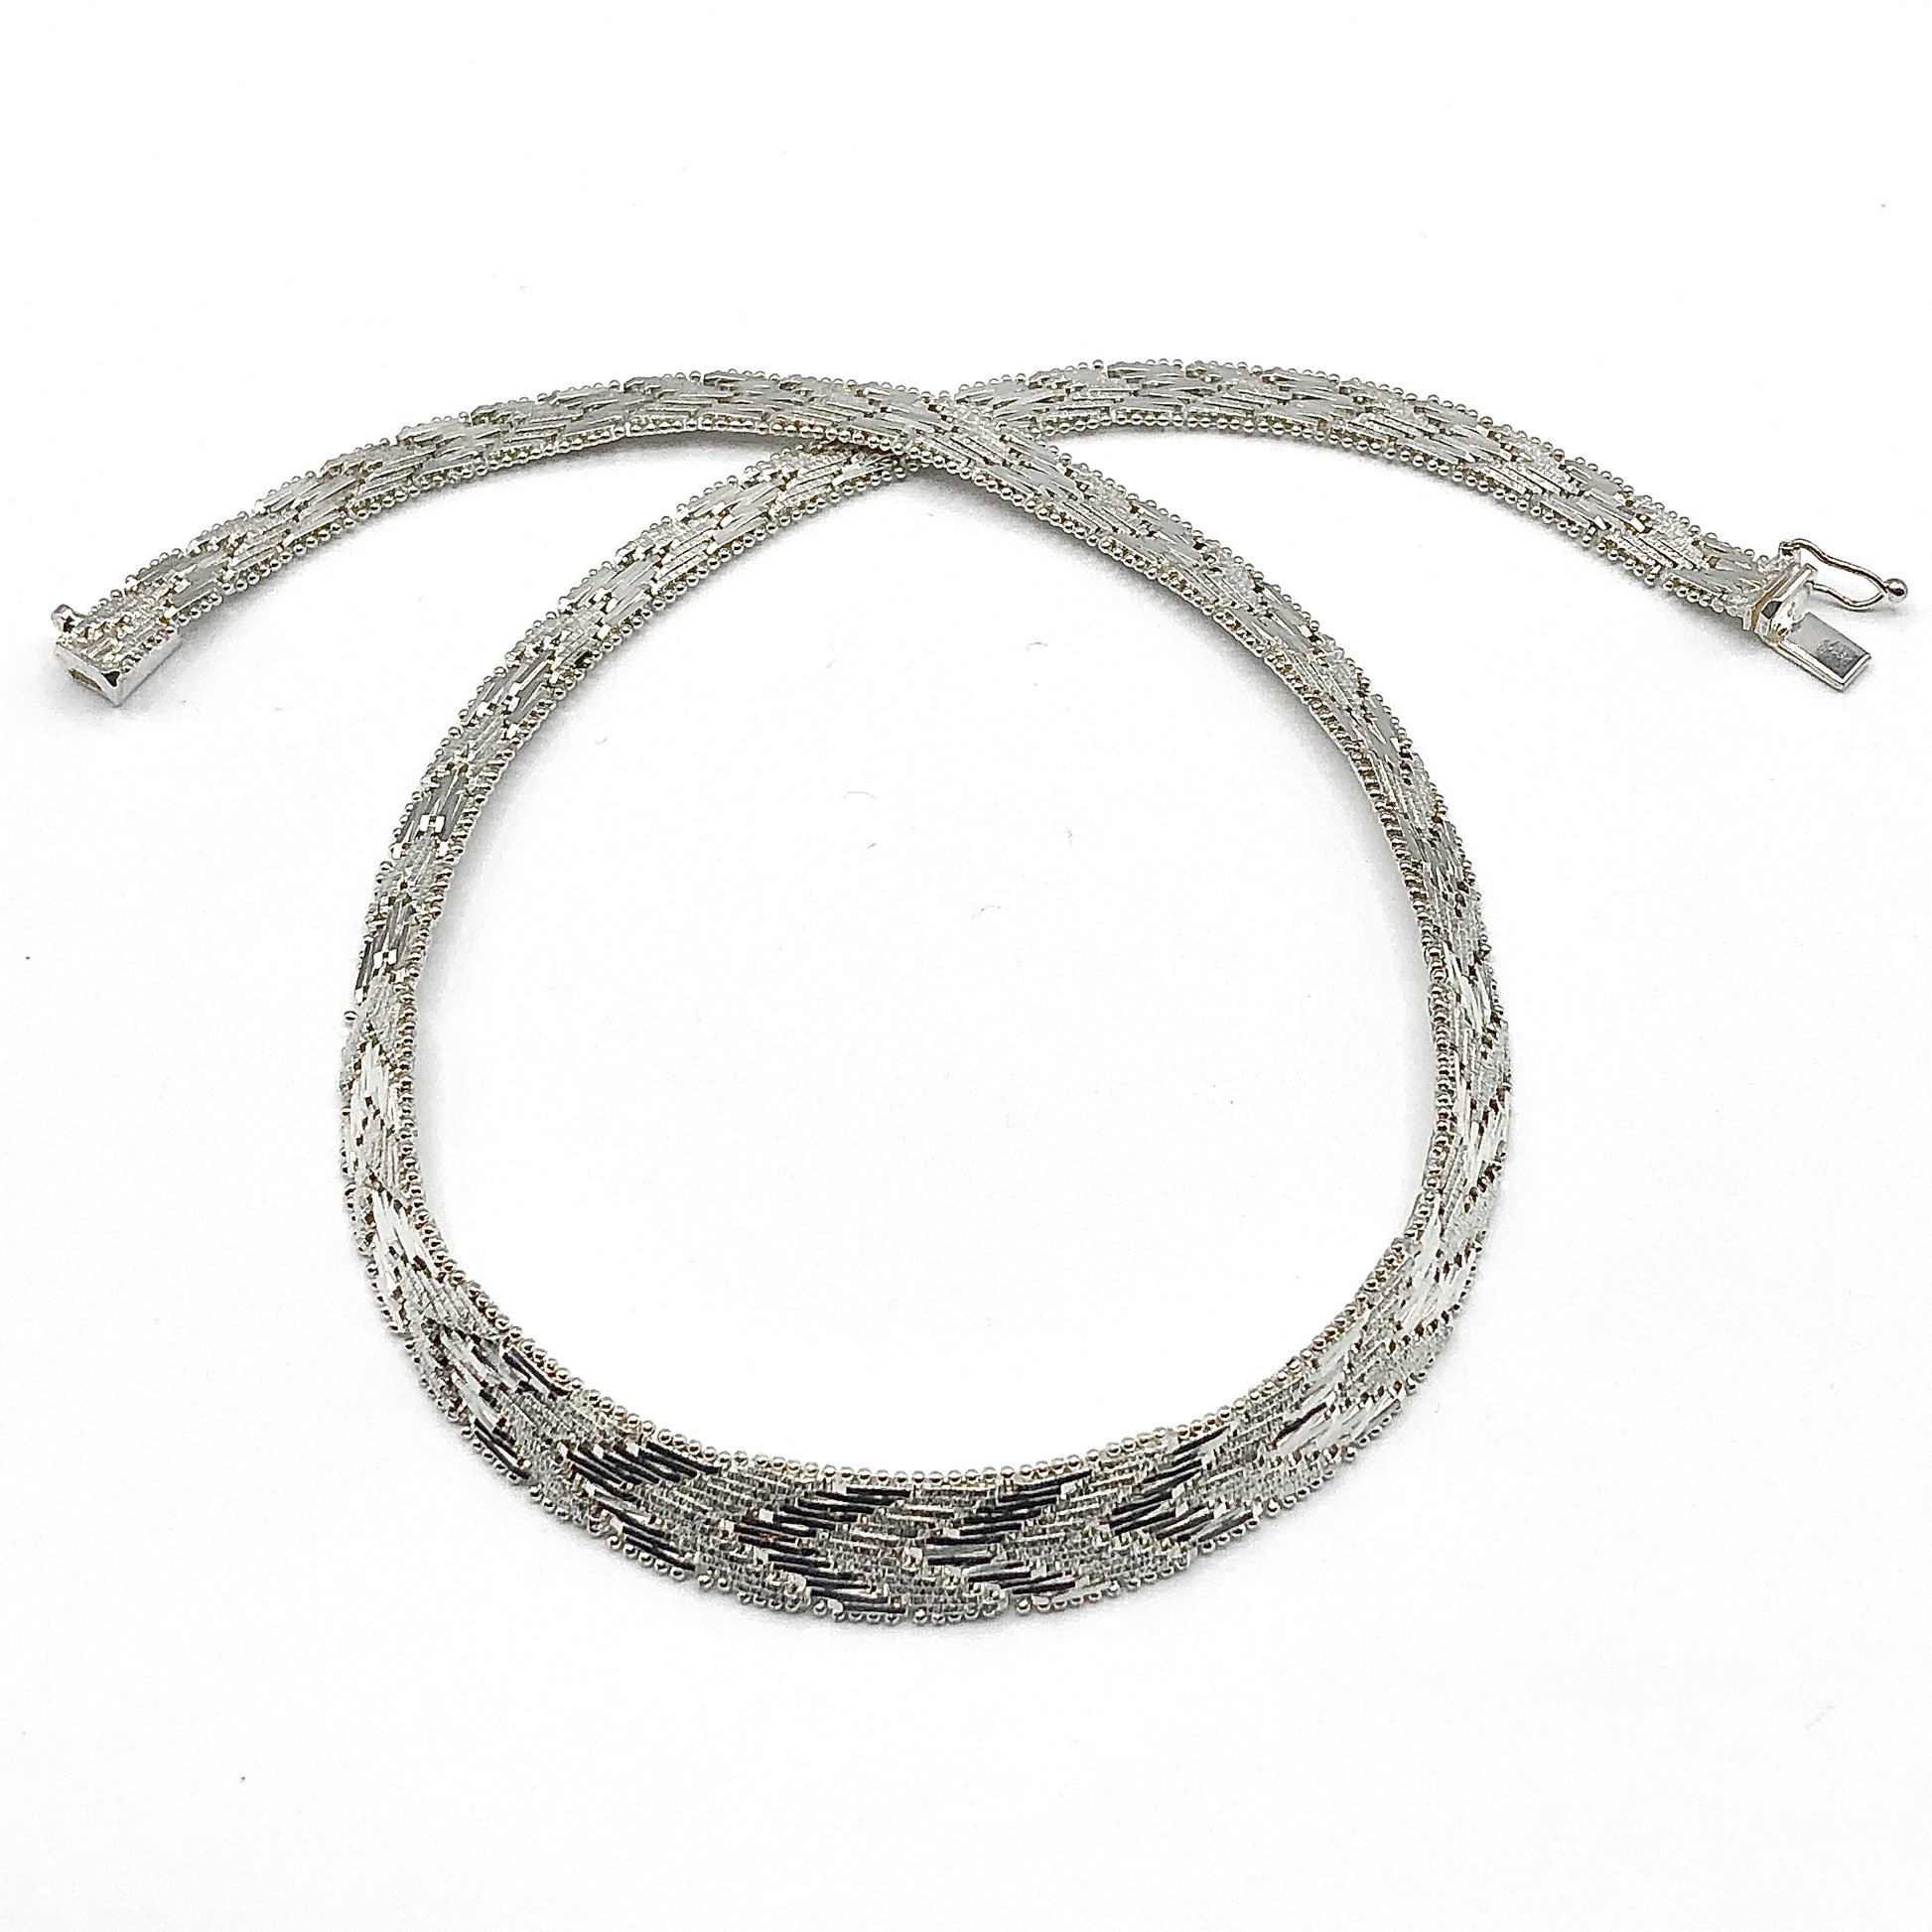 Necklace Sterling Silver Riccio Link Chevron Herringbone Choker Collar